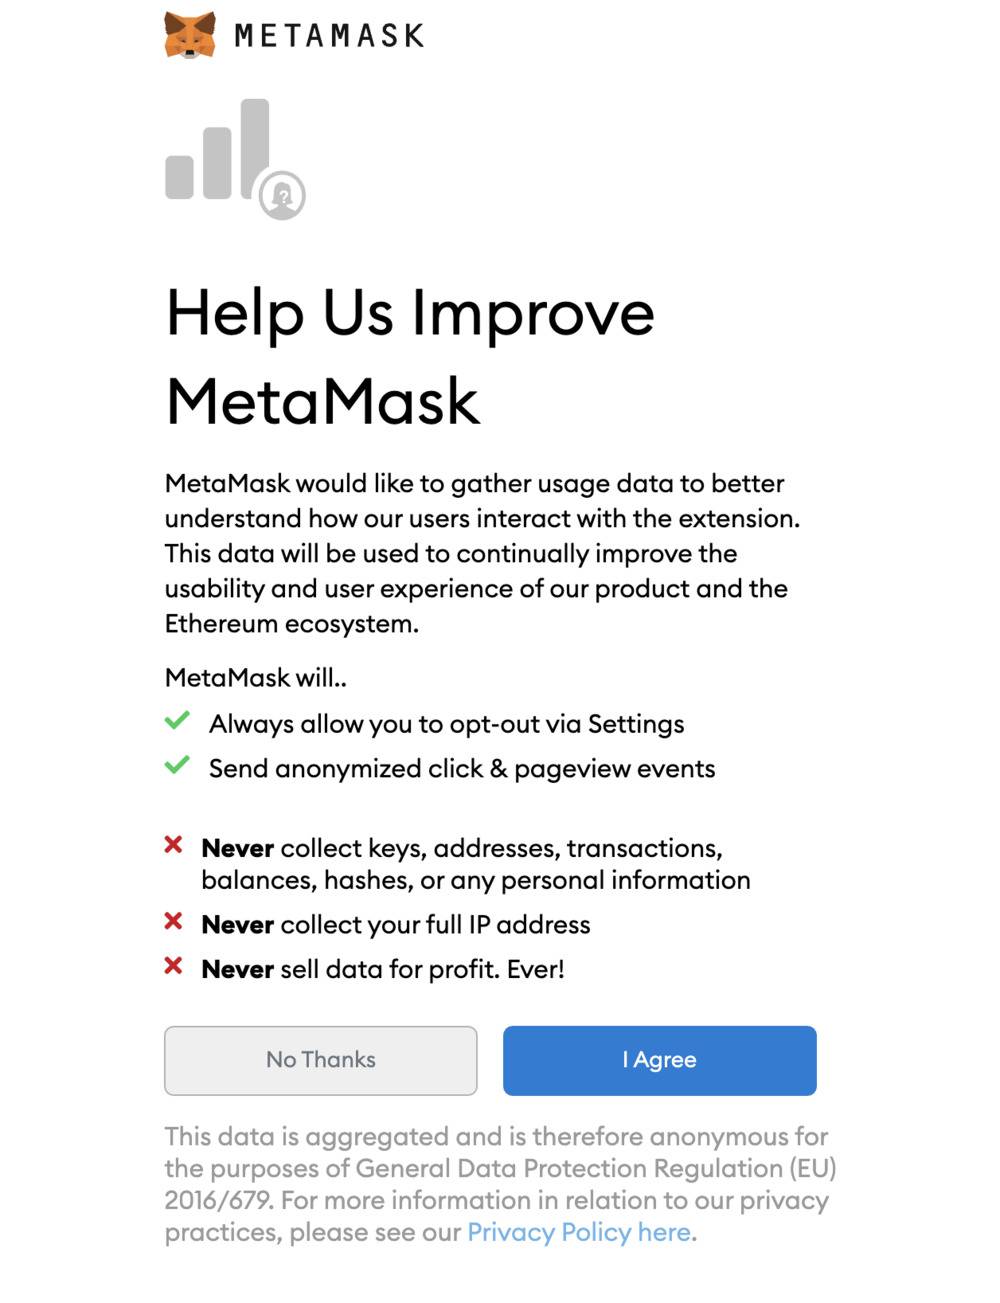 Création d'un nouveau compte Metamask